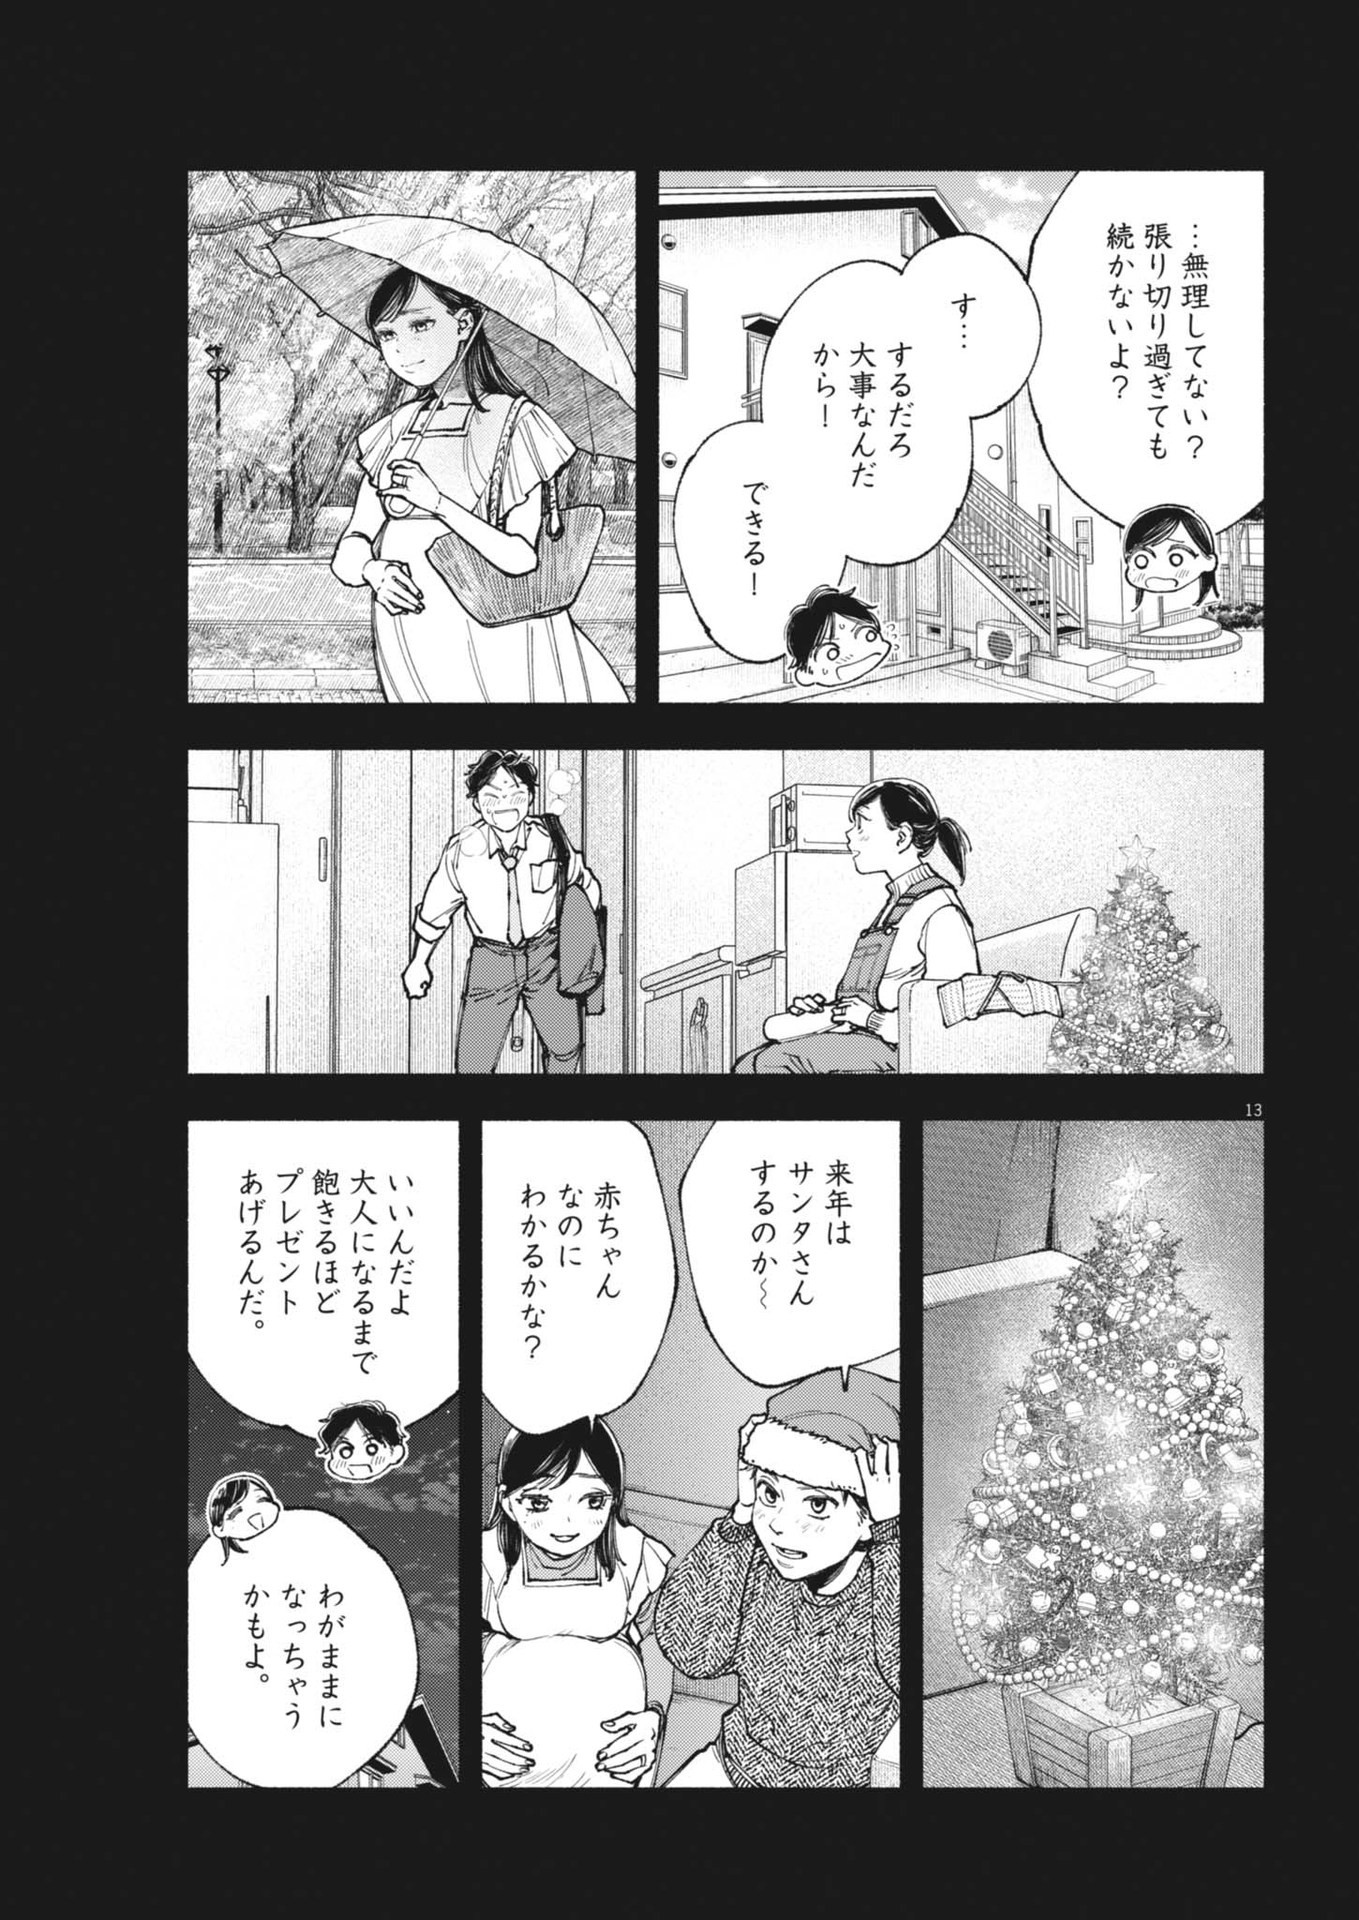 Konoyo wa Tatakau Kachi ga Aru  - Chapter 26 - Page 13